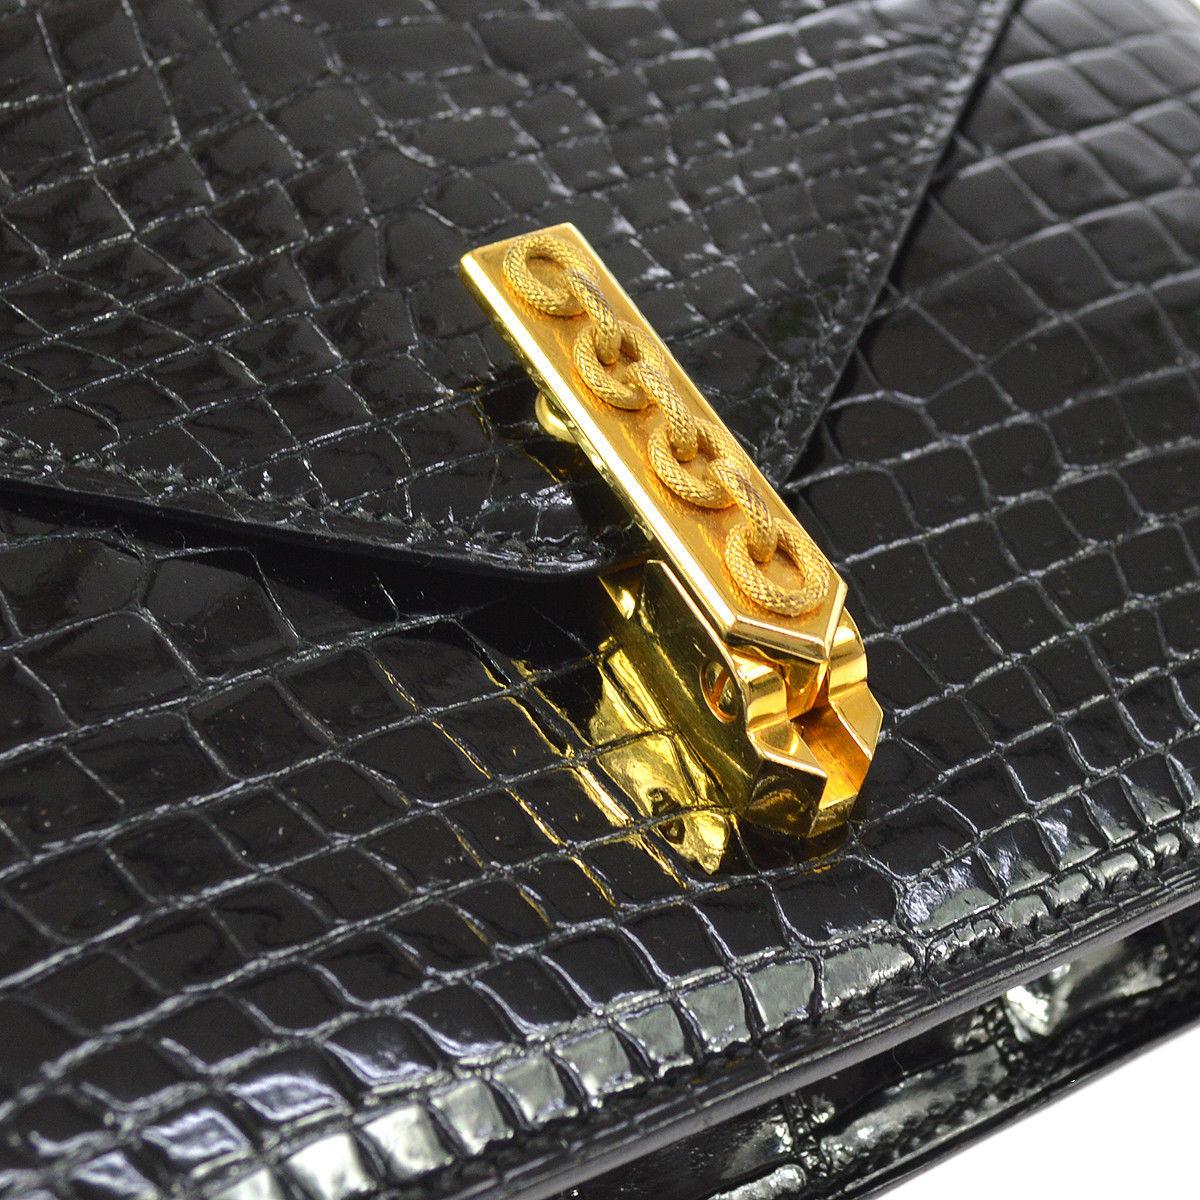 Hermes Rare Black Crocodile Leather Gold Emblem 2 in 1 Clutch Shoulder Flap Bag

Crocodile
Leather
Gold tone hardware
Leather lining
Shoulder strap drop 15.5